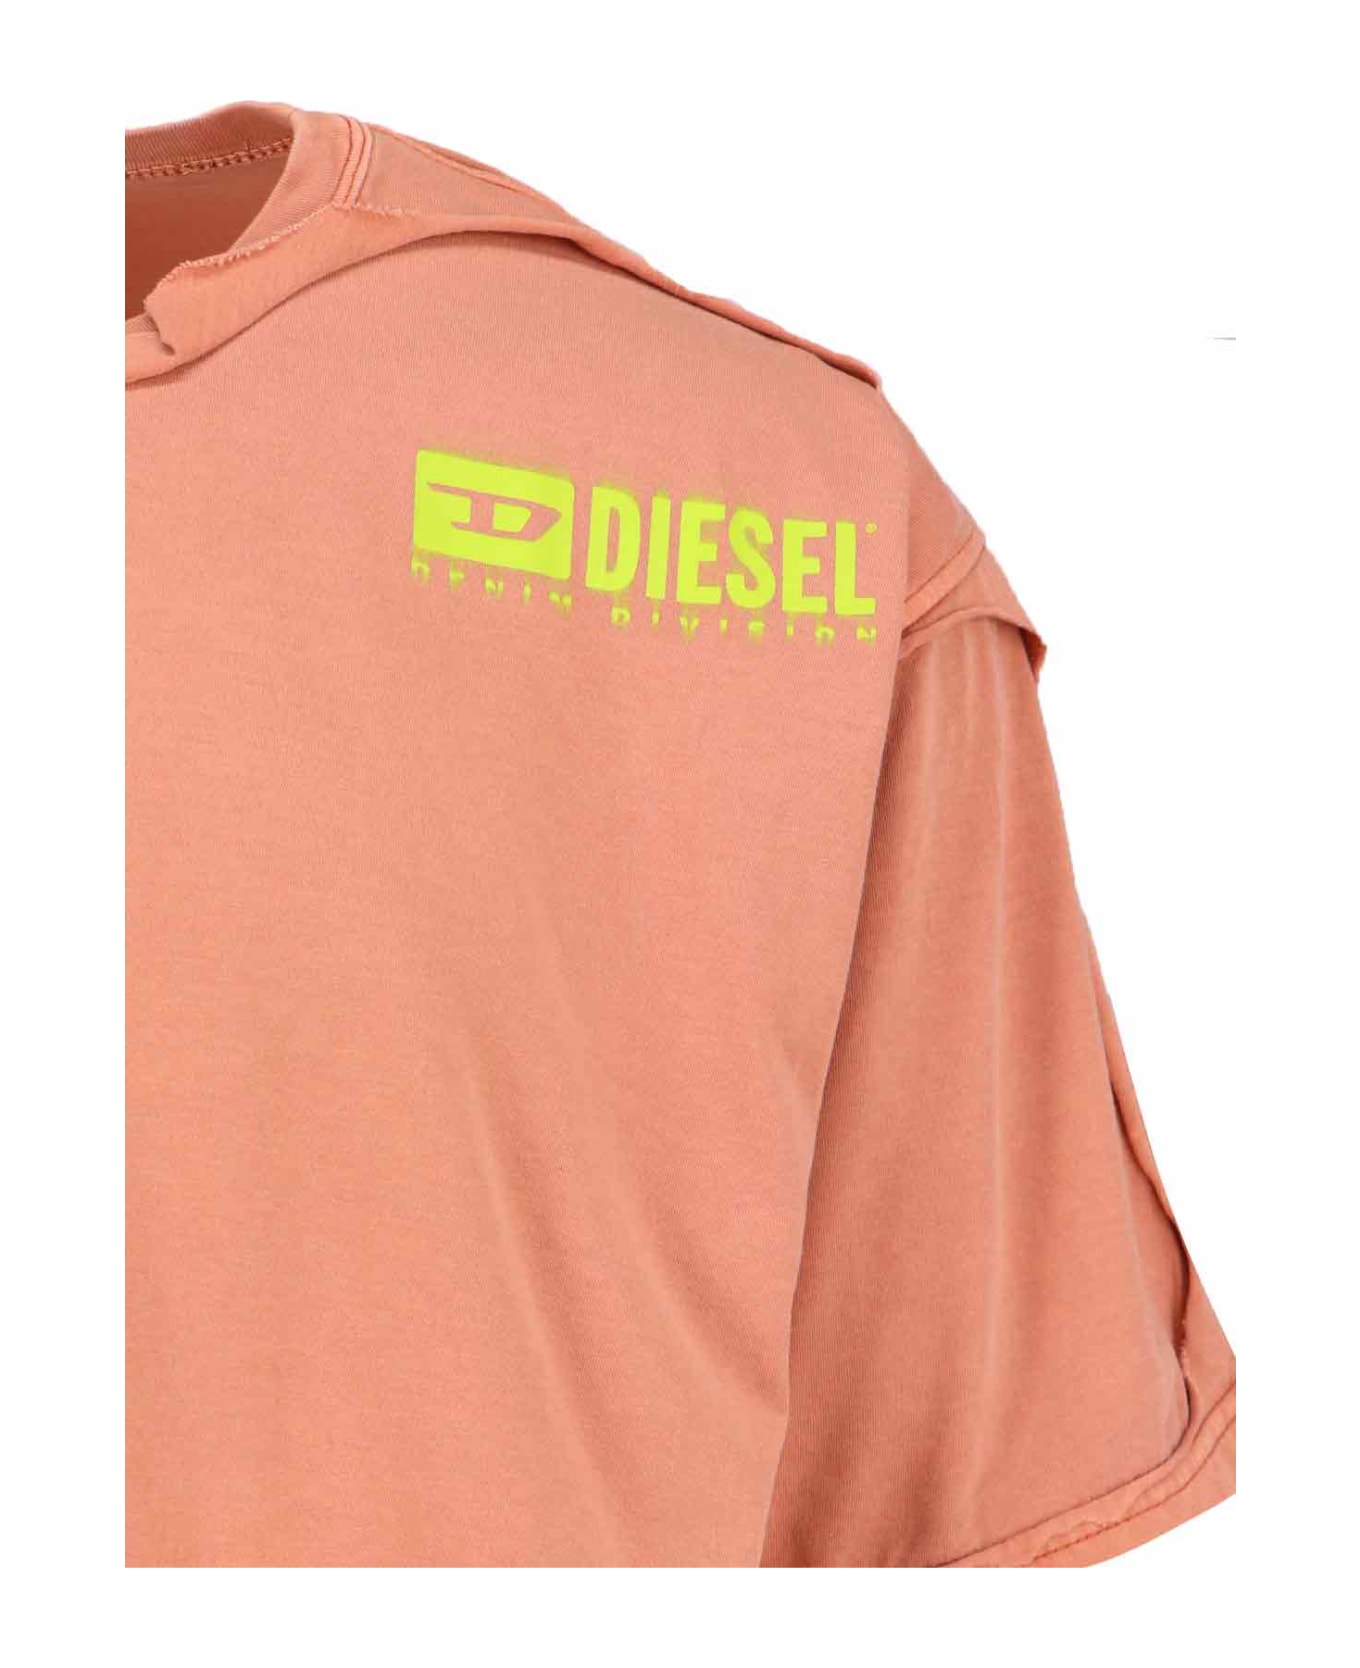 Diesel 't-box-dbl' T-shirt - Orange